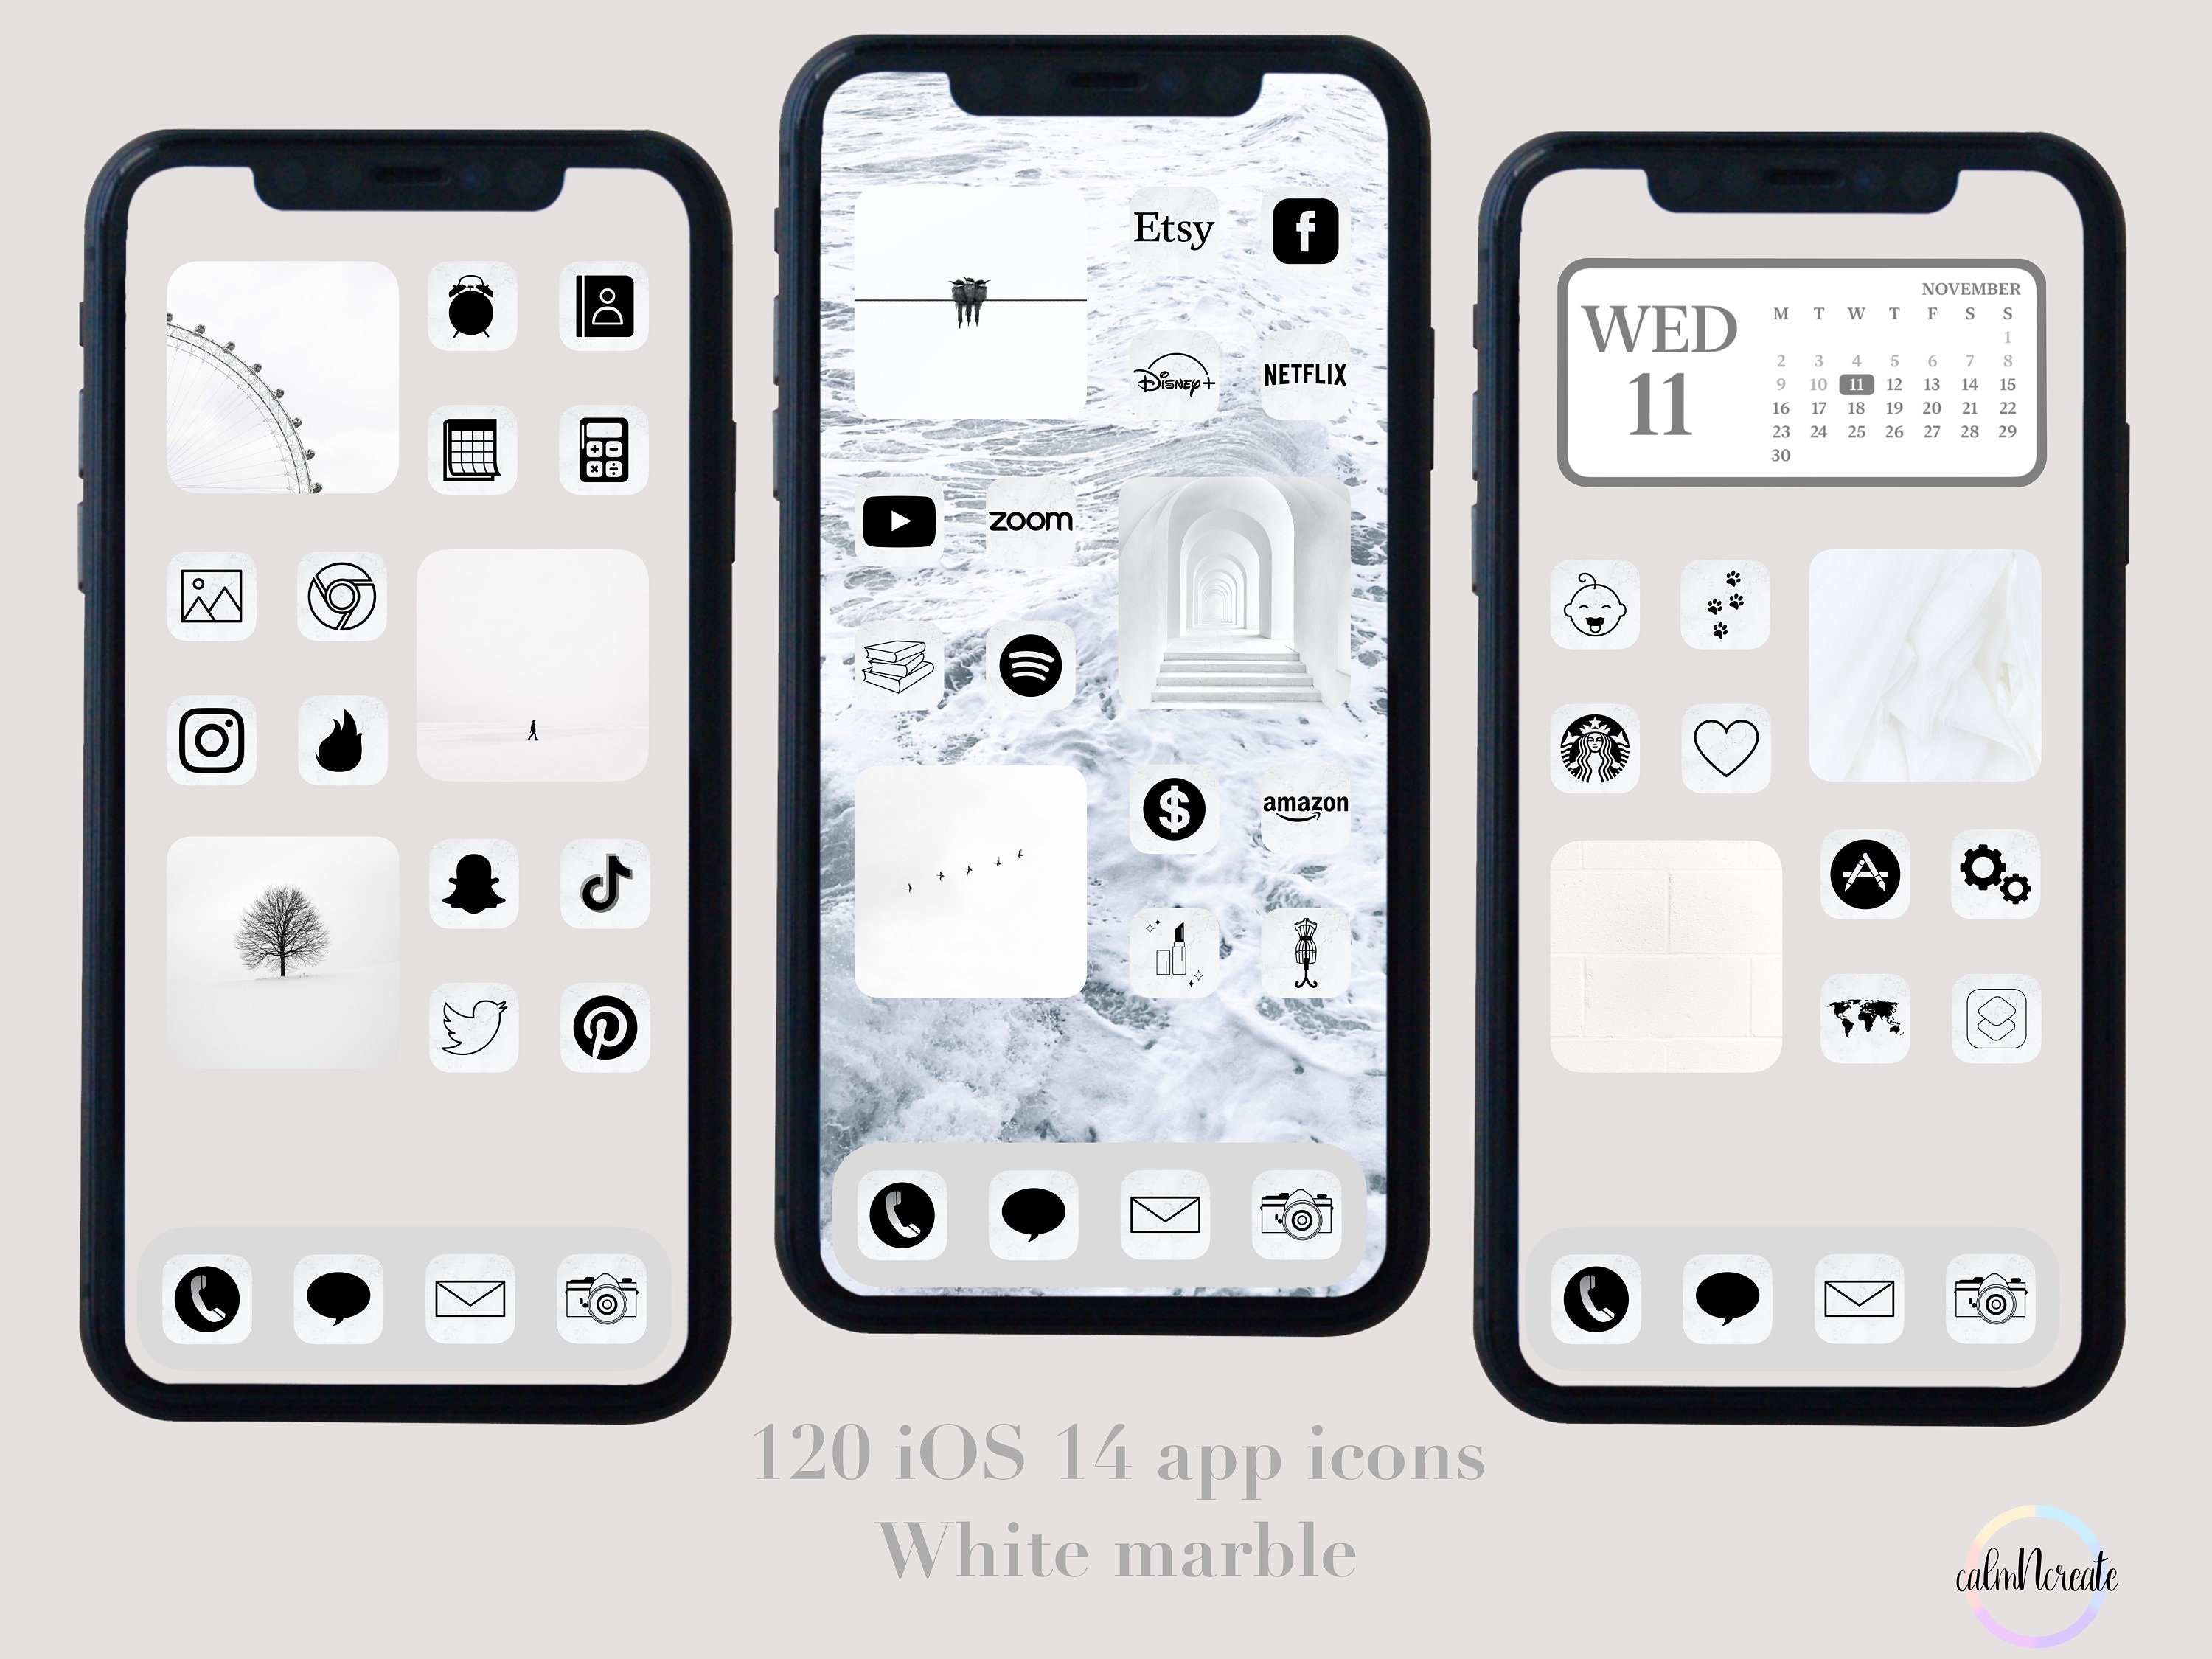 Biểu tượng ứng dụng Iphone là một cách tuyệt vời để trang trí màn hình điện thoại của bạn theo phong cách của riêng mình. Với Ios 14 White Marble App Icons Iphone App Covers, bạn sẽ được trải nghiệm những biểu tượng đẹp mắt và độc đáo, tạo nên một màn hình điện thoại thật sự nổi bật.